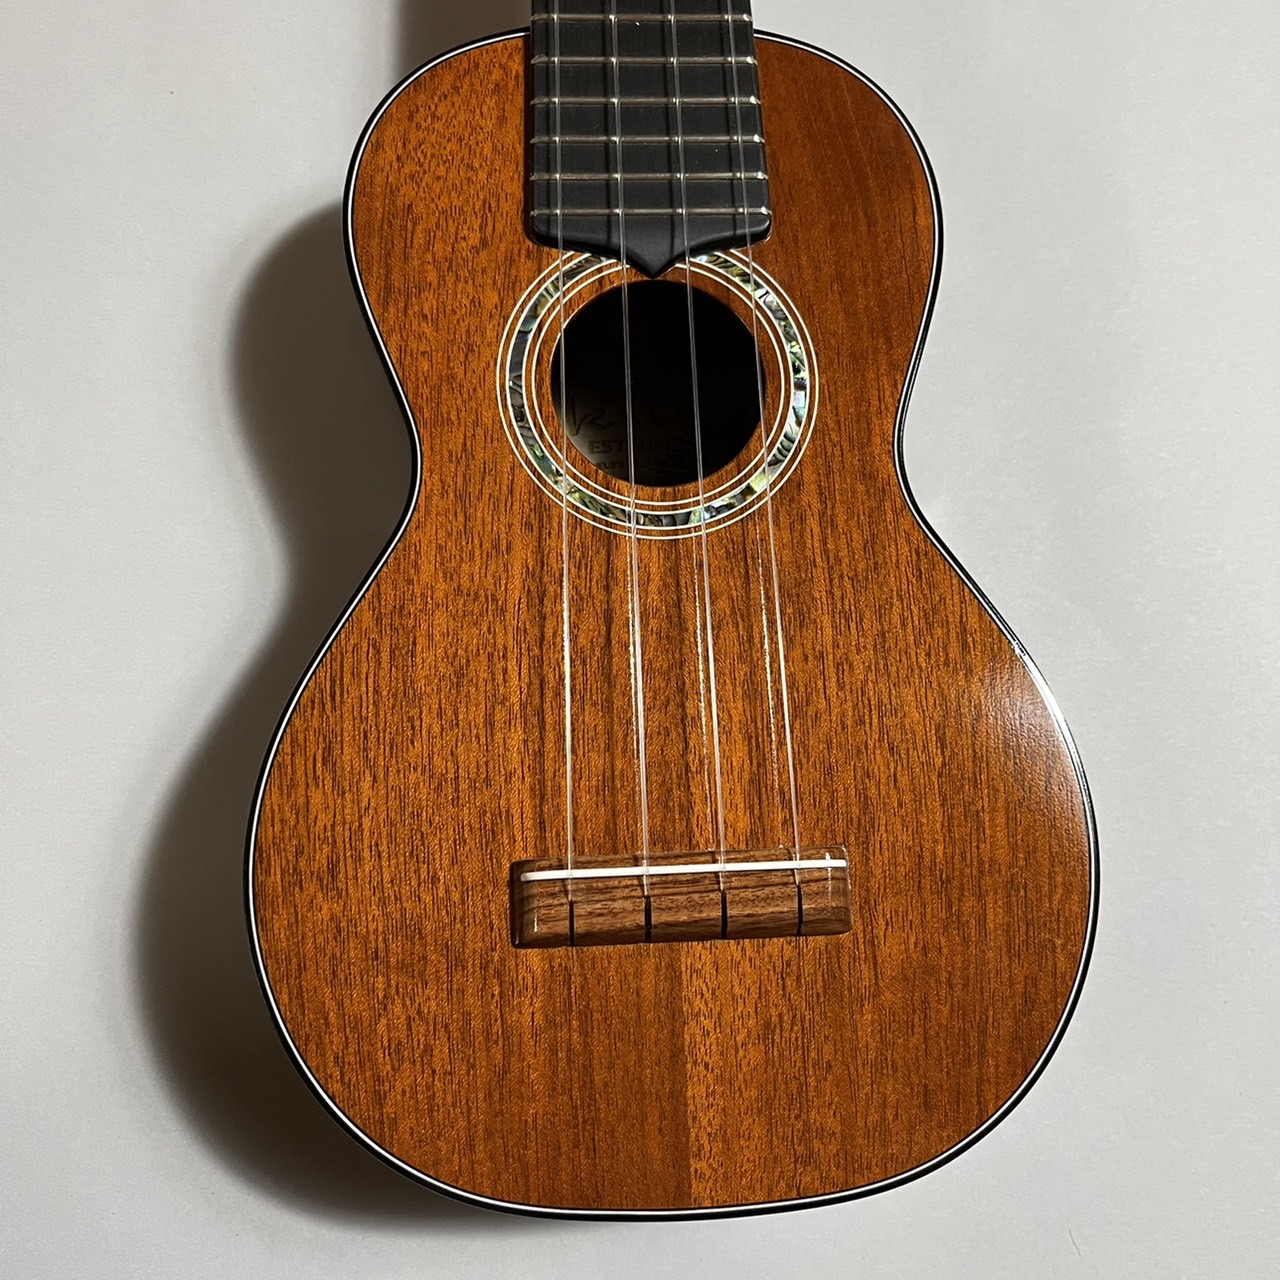 tkitki ukulele S.Cuban Mahogany ソプラノウクレレ ティキティキ